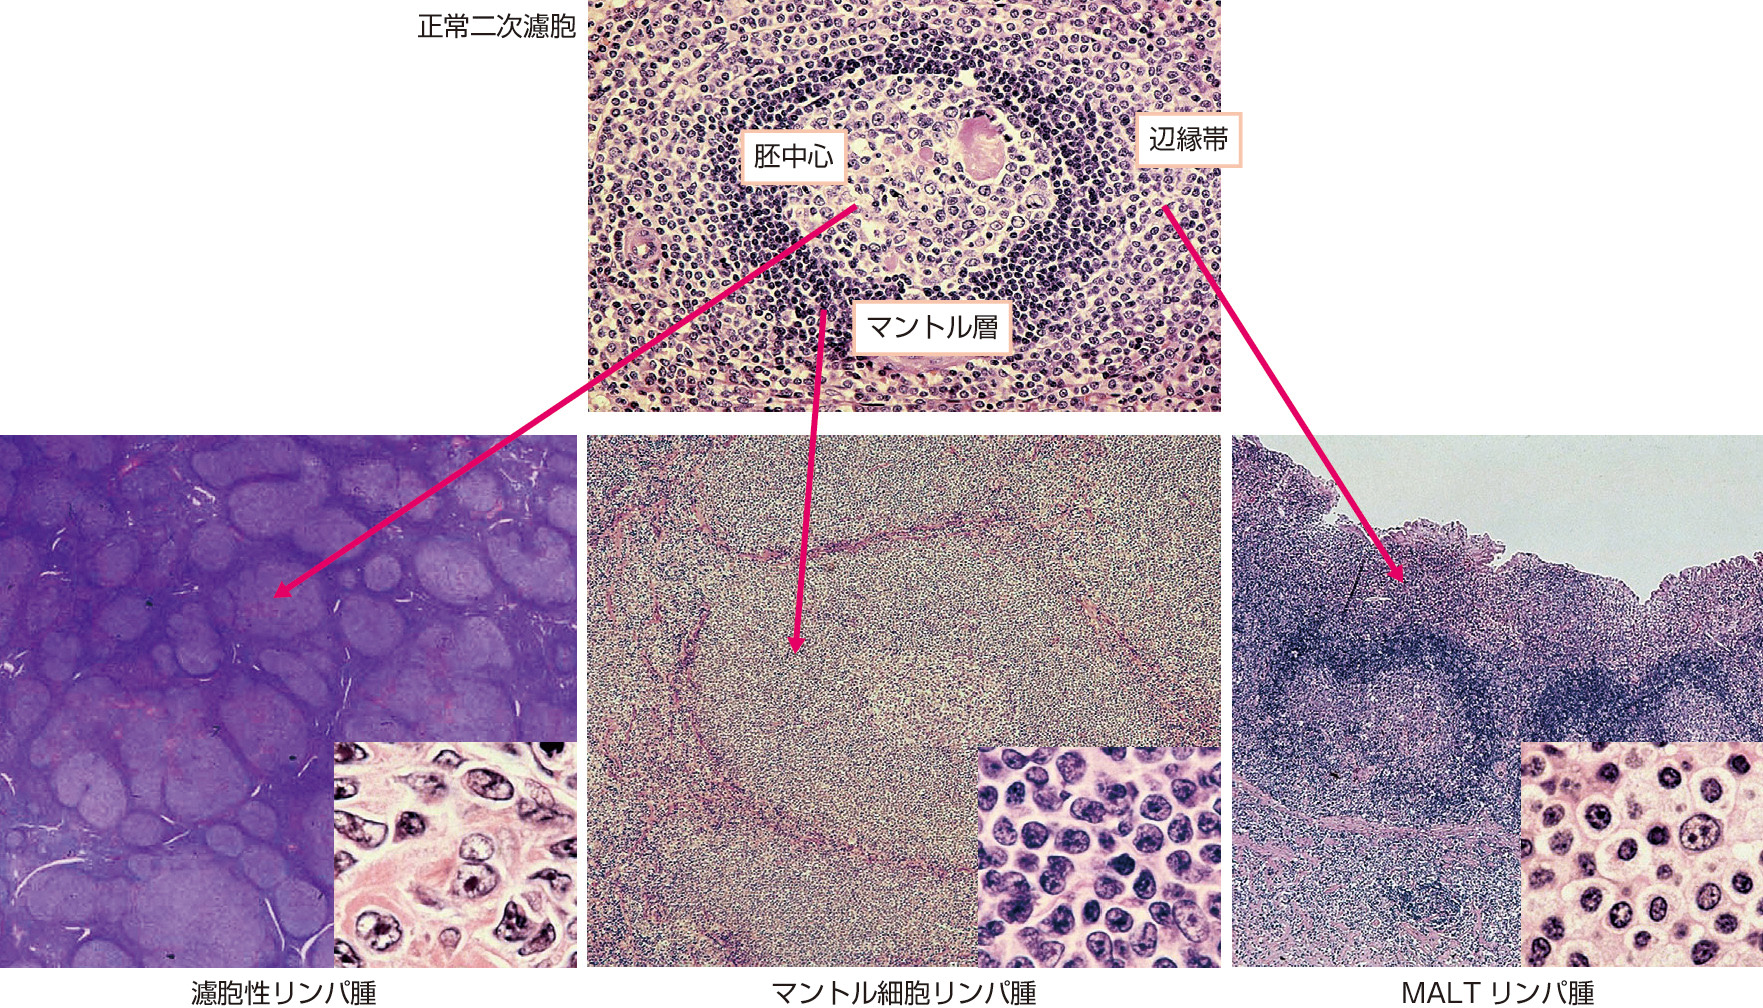 ⓔ図17-10-11　濾胞性リンパ腫，マントル細胞リンパ腫，MALTリンパ腫の病理組織像 (写真はすべて中村栄男先生のご厚意による) 各リンパ腫の腫瘍細胞の形態と浸潤パターンは，それぞれの正常由来細胞と類似している．